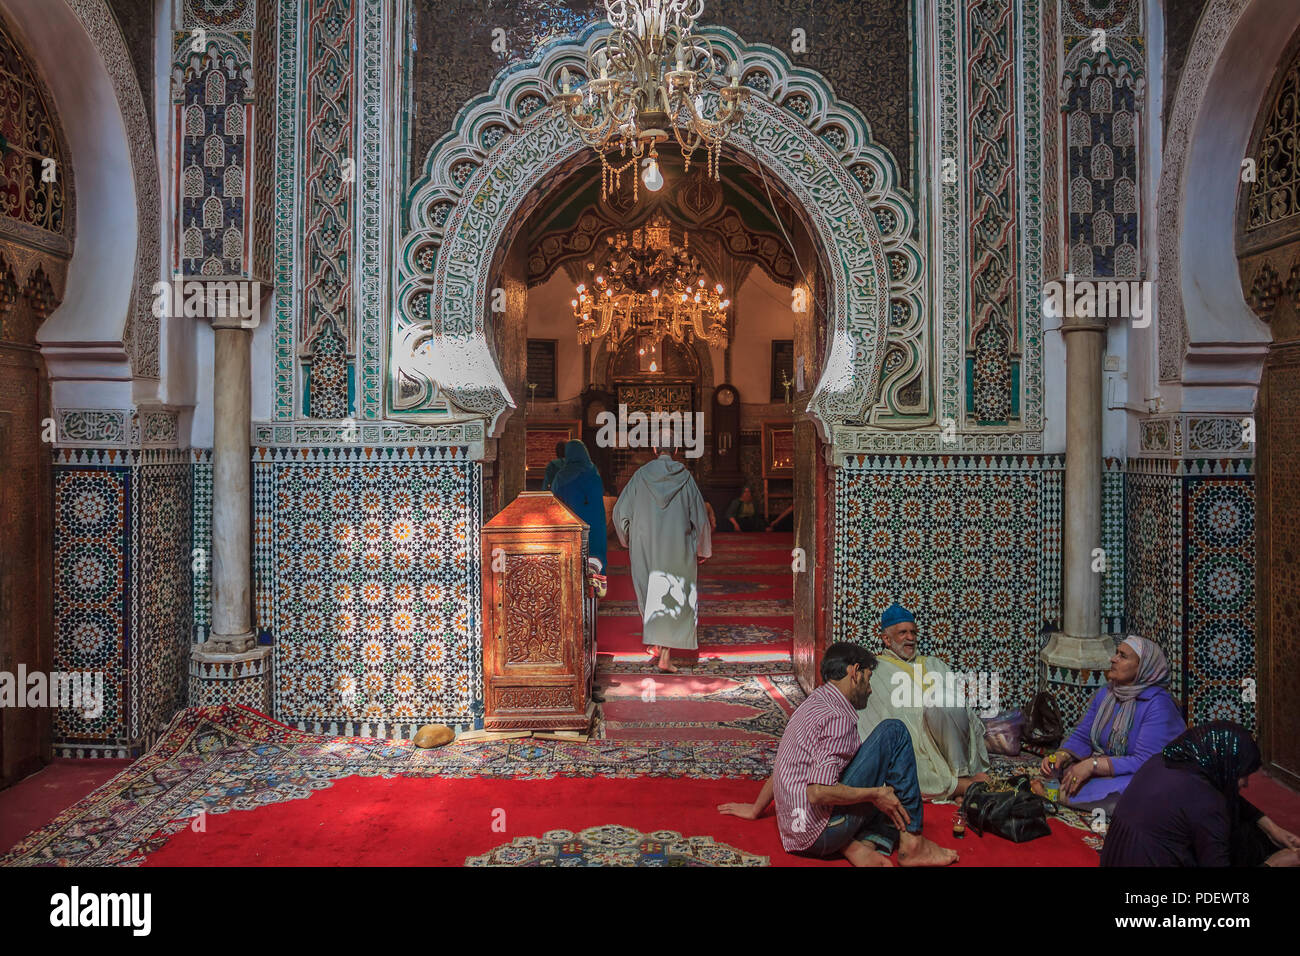 Fes, Maroc - 11 mai 2013 : par l'entrée d'une mosquée, décorées avec des mosaïques et des sculptures arabesque Banque D'Images